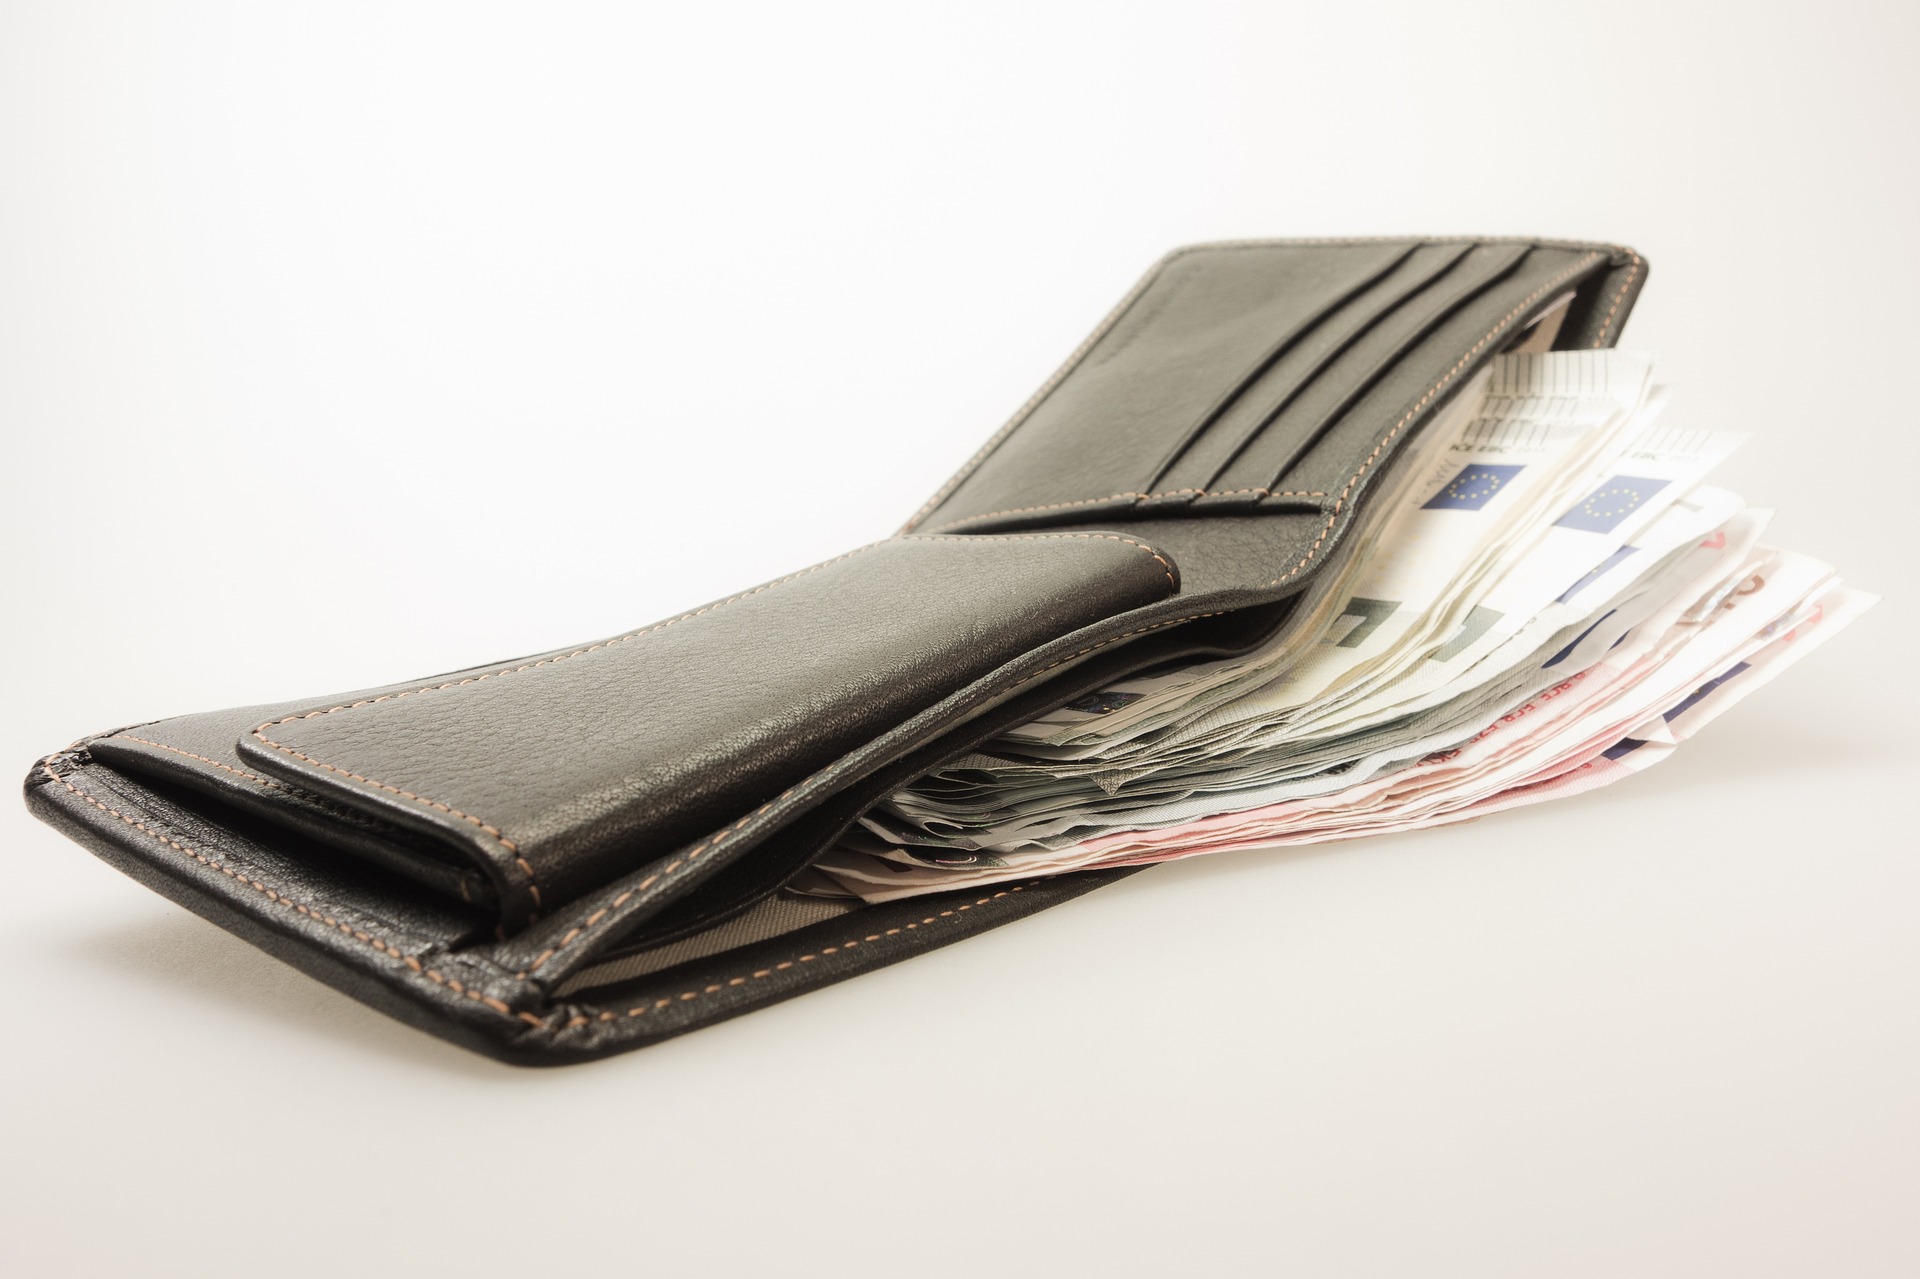 Tạp chí Reader's Digest đã tiến hành thí nghiệm về “chiếc ví bị mất”, họ cố tình làm rơi ví ở 16 thành phố được chọn trên khắp thế giới để xem mọi người phản ứng như thế nào, và liệu có trả lại ví một cách trung thực hay không. (Ảnh: Pixabay)